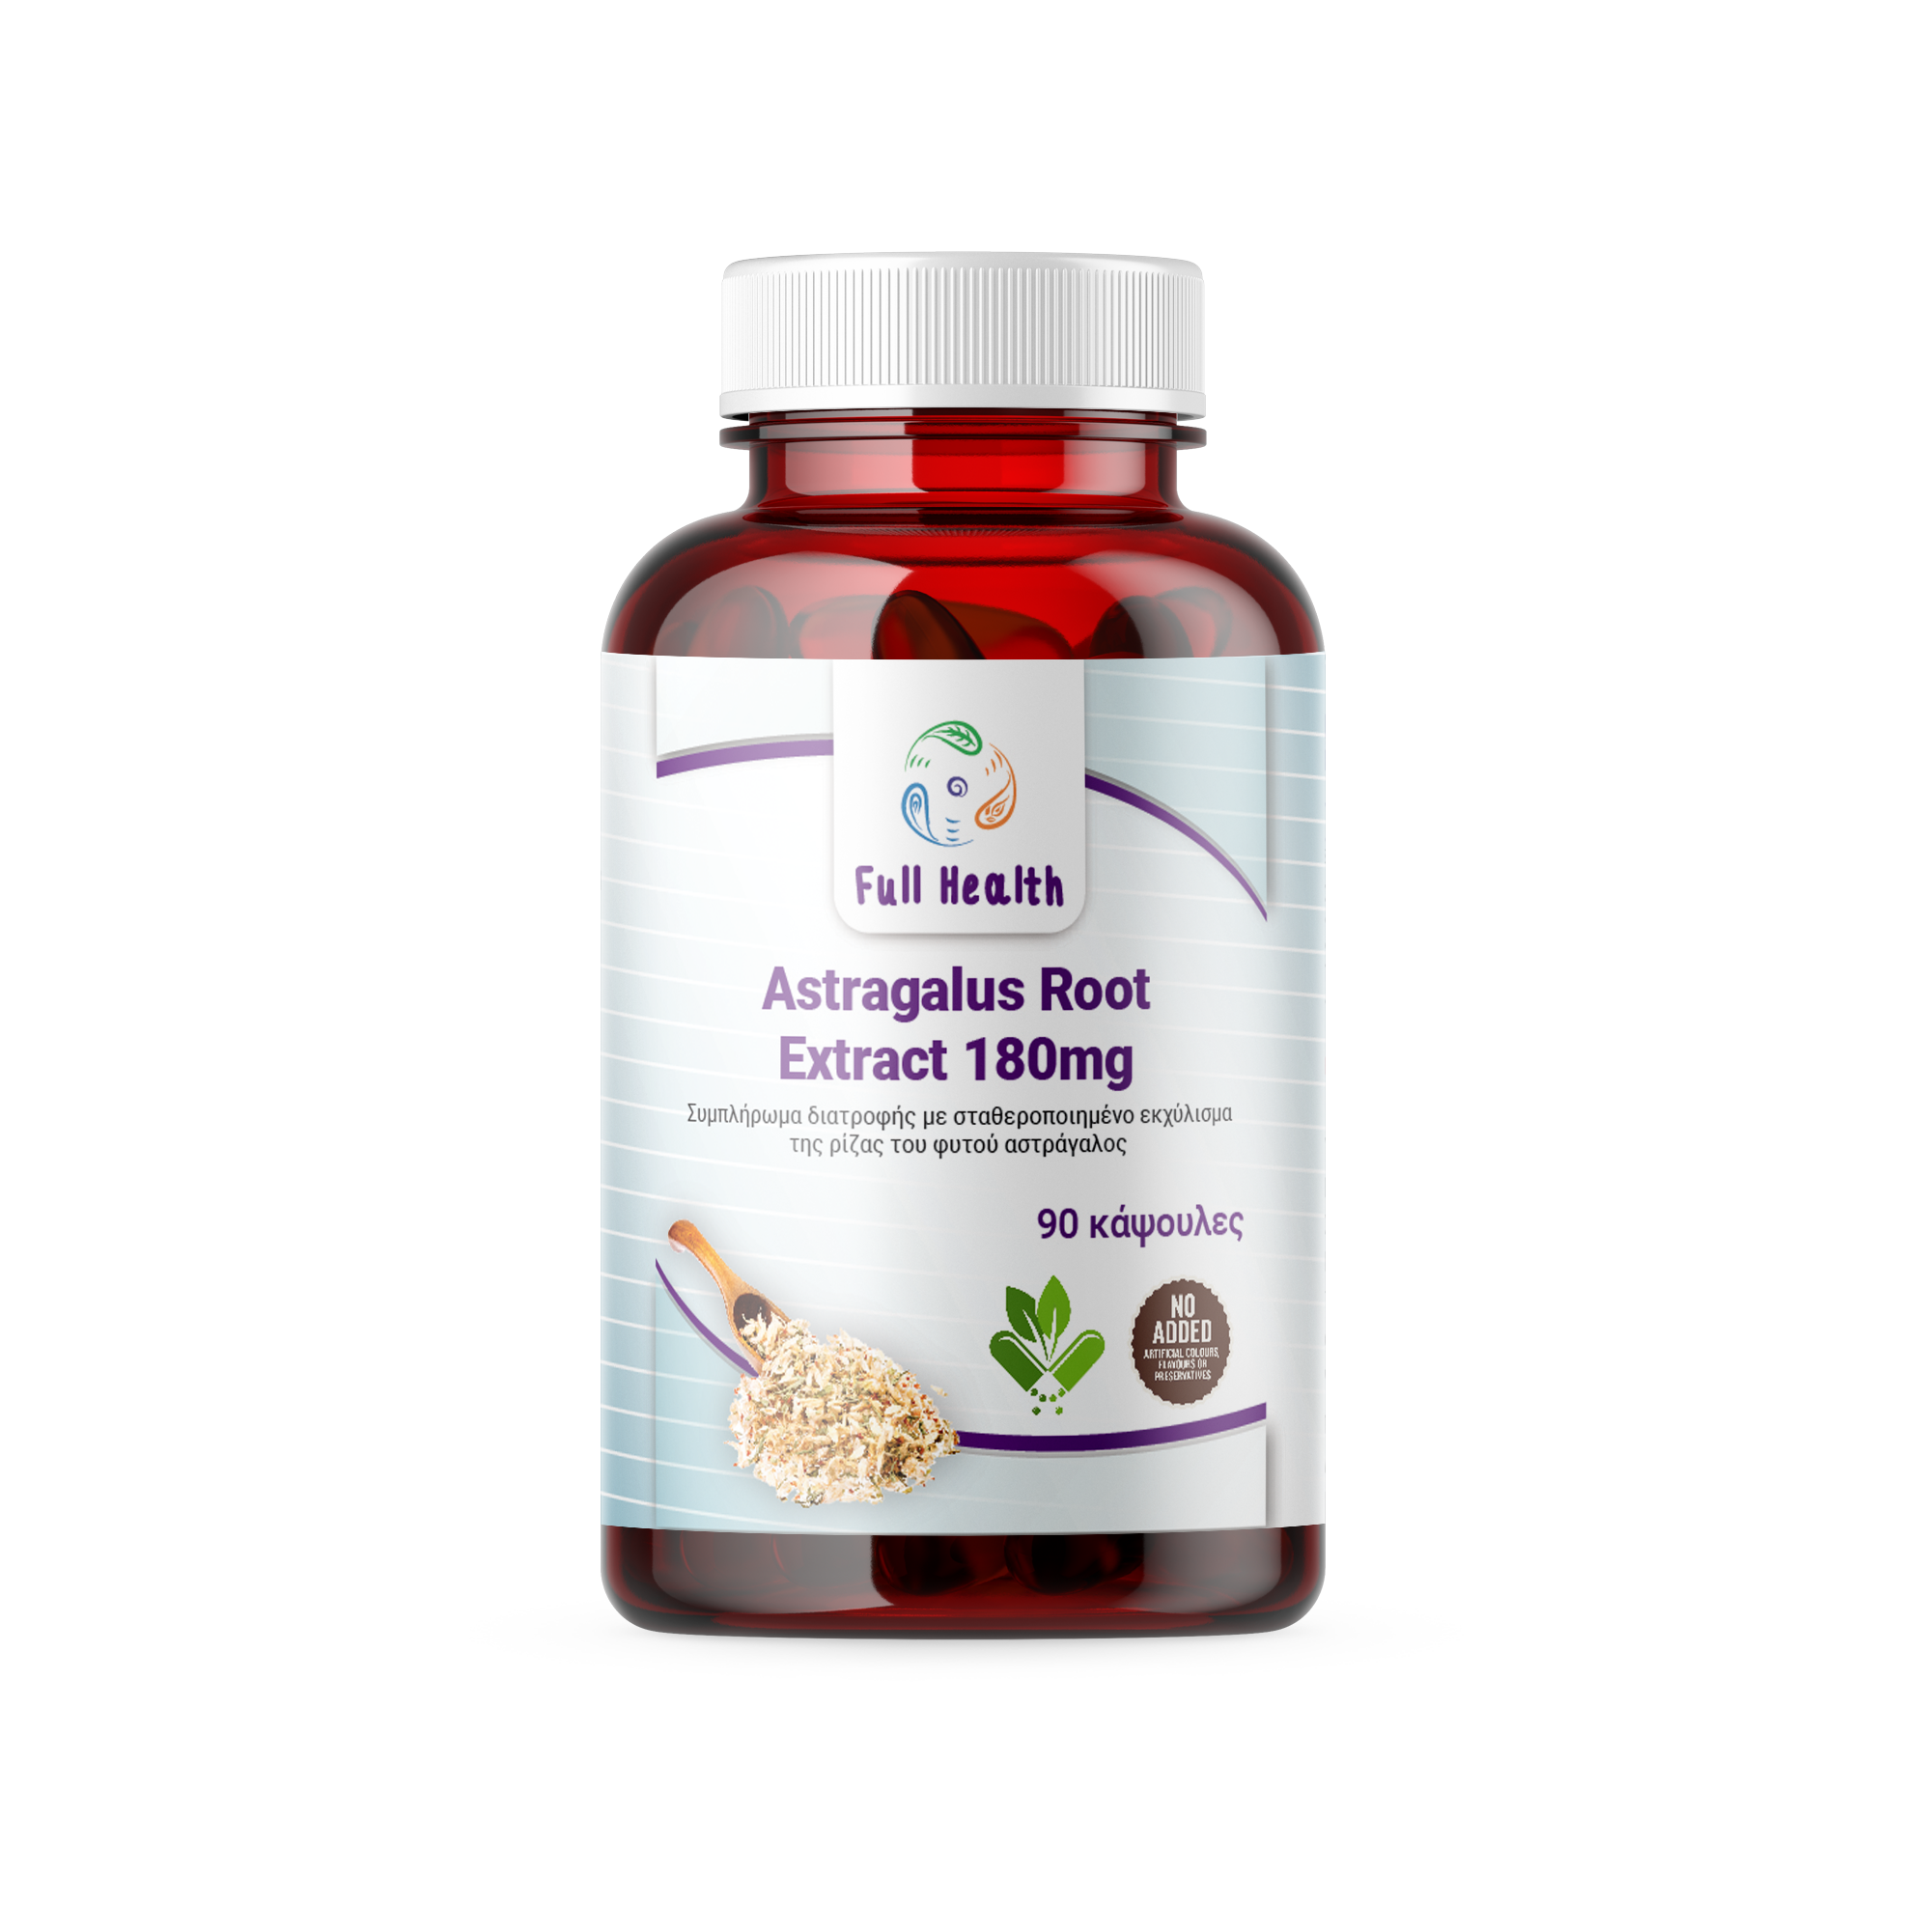 Full Health Astragalus Root Extract 180 mg 90 Vcaps (Συμπλήρωμα διατροφής με ισχυρό εκχύλισμα απο τη ρίζα του φυτού αστράγαλος σταθεροποιημένης απόδοσης )